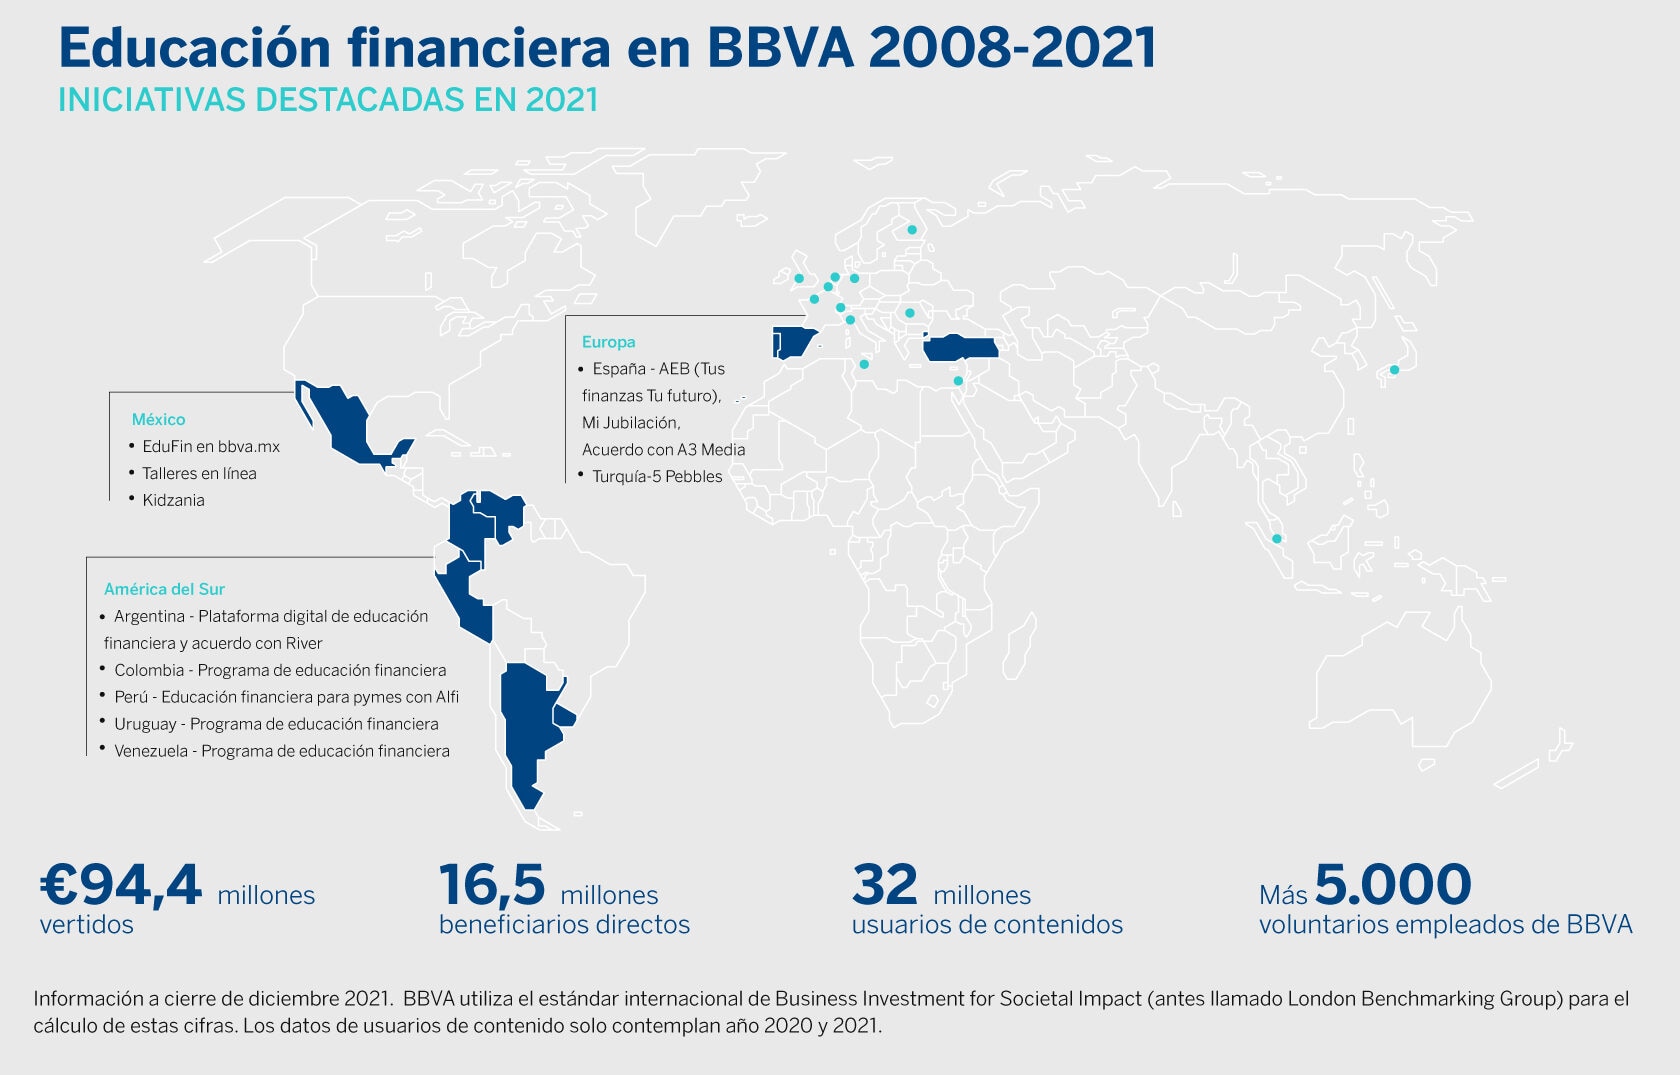 BBVA presenta su Plan Global de Educación Financiera con el objetivo de formar a un millón de personas hasta 2025